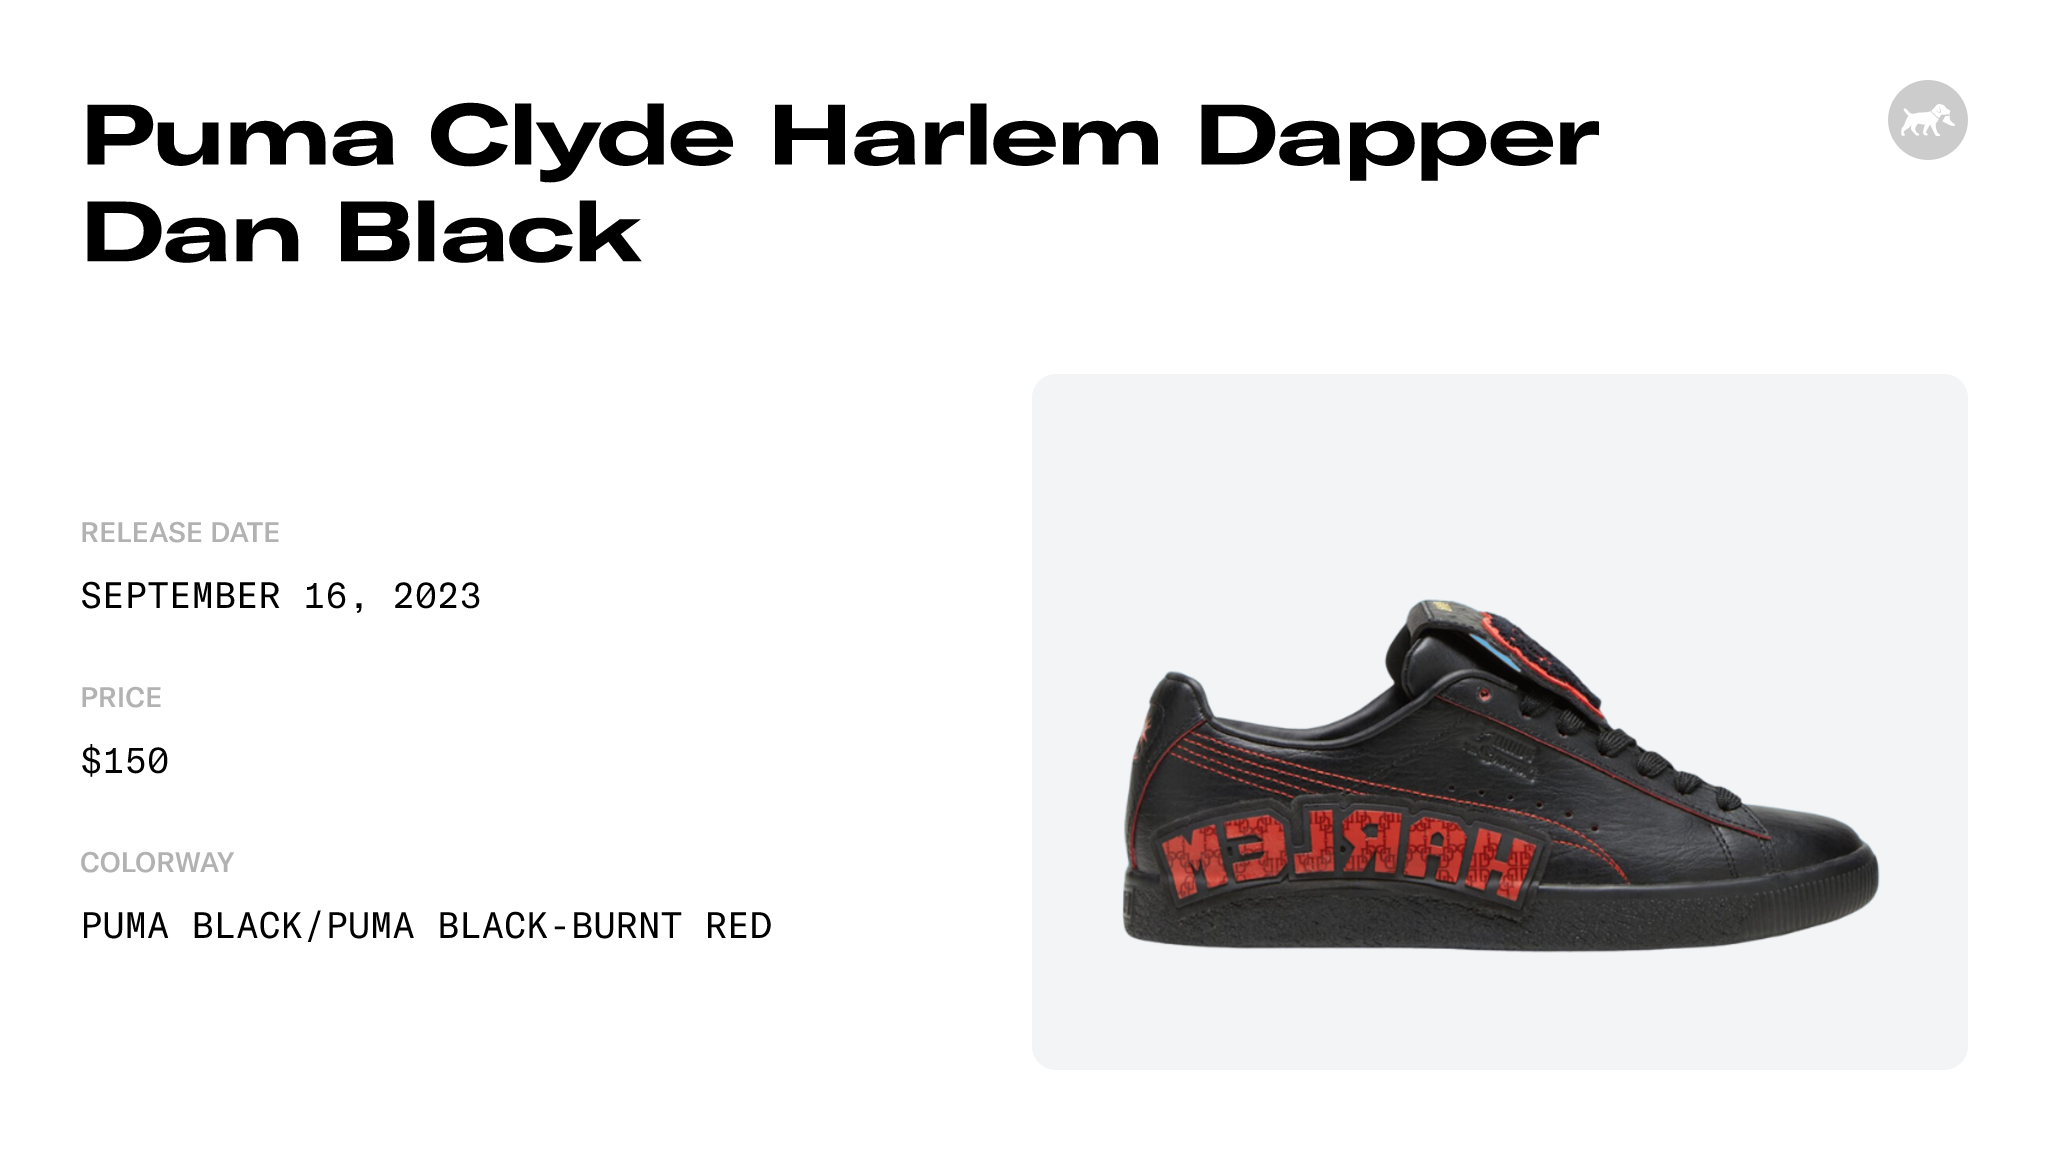 Puma Clyde Harlem Dapper Dan Black - 394491-01 Raffles and Release Date